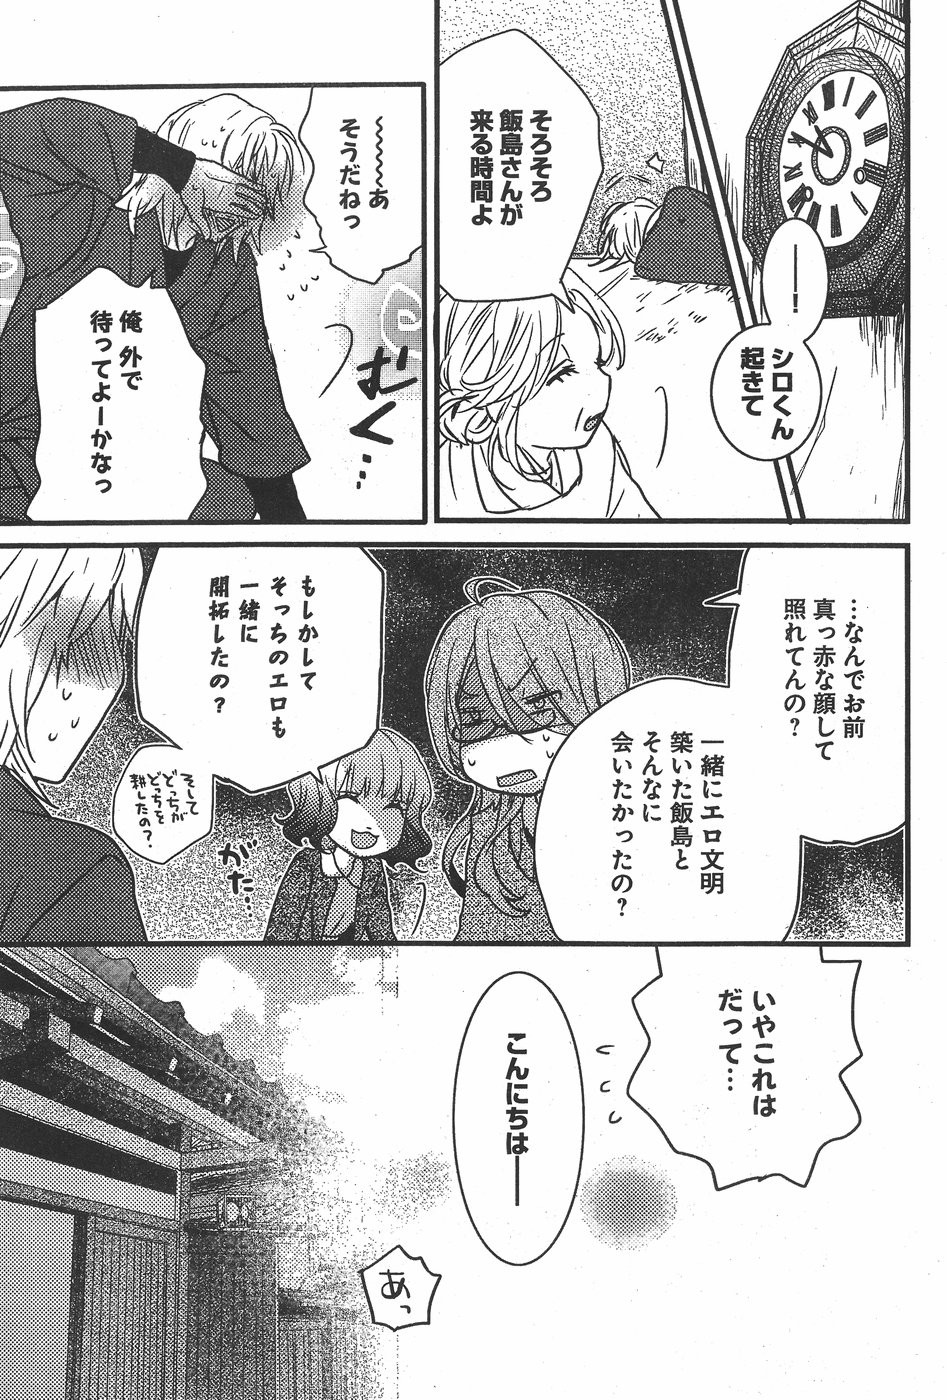 Bokura wa Minna Kawaisou - Chapter 81 - Page 5